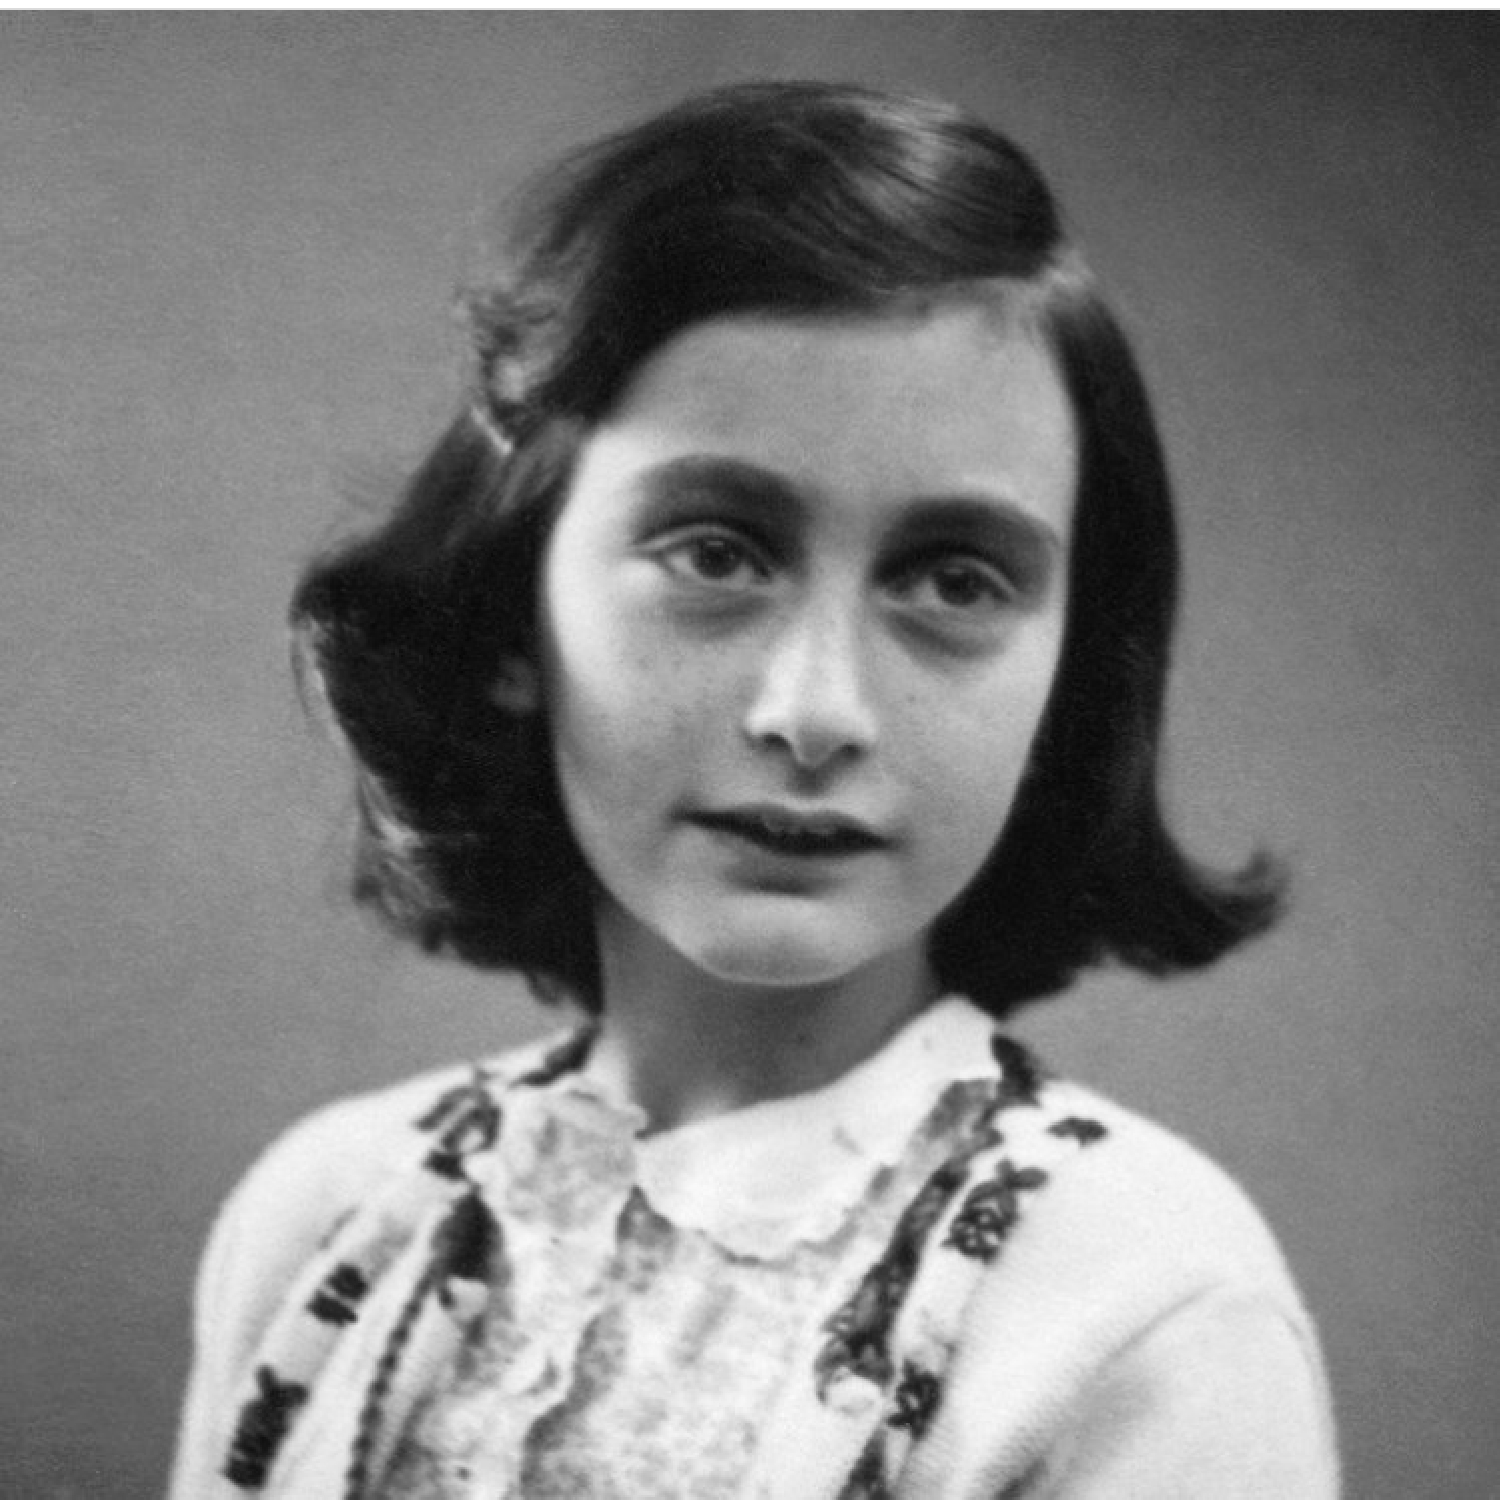 Život Anny Frankové – malá velká hrdinka, jejíž moudrost byla nadčasová